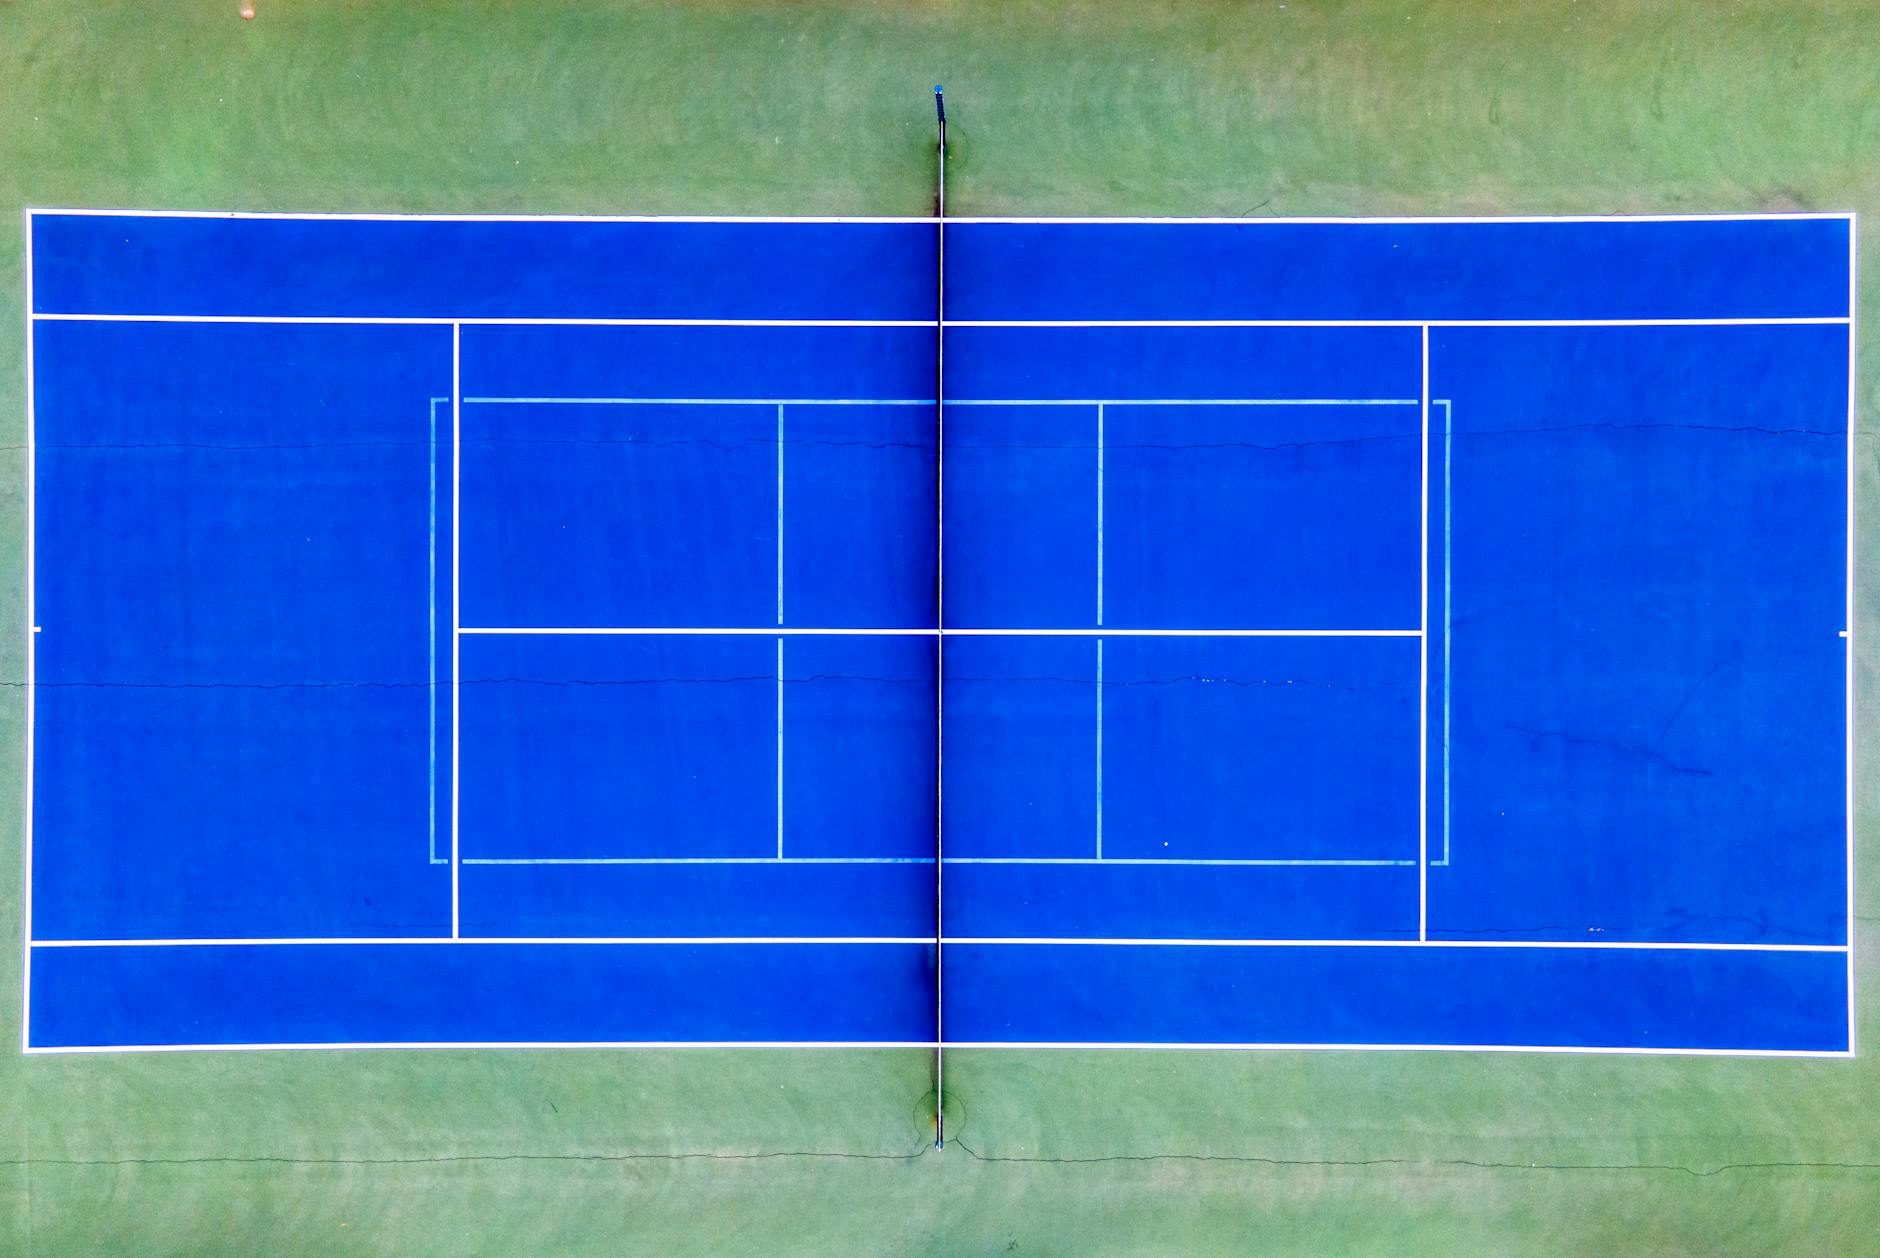 a blue tennis court